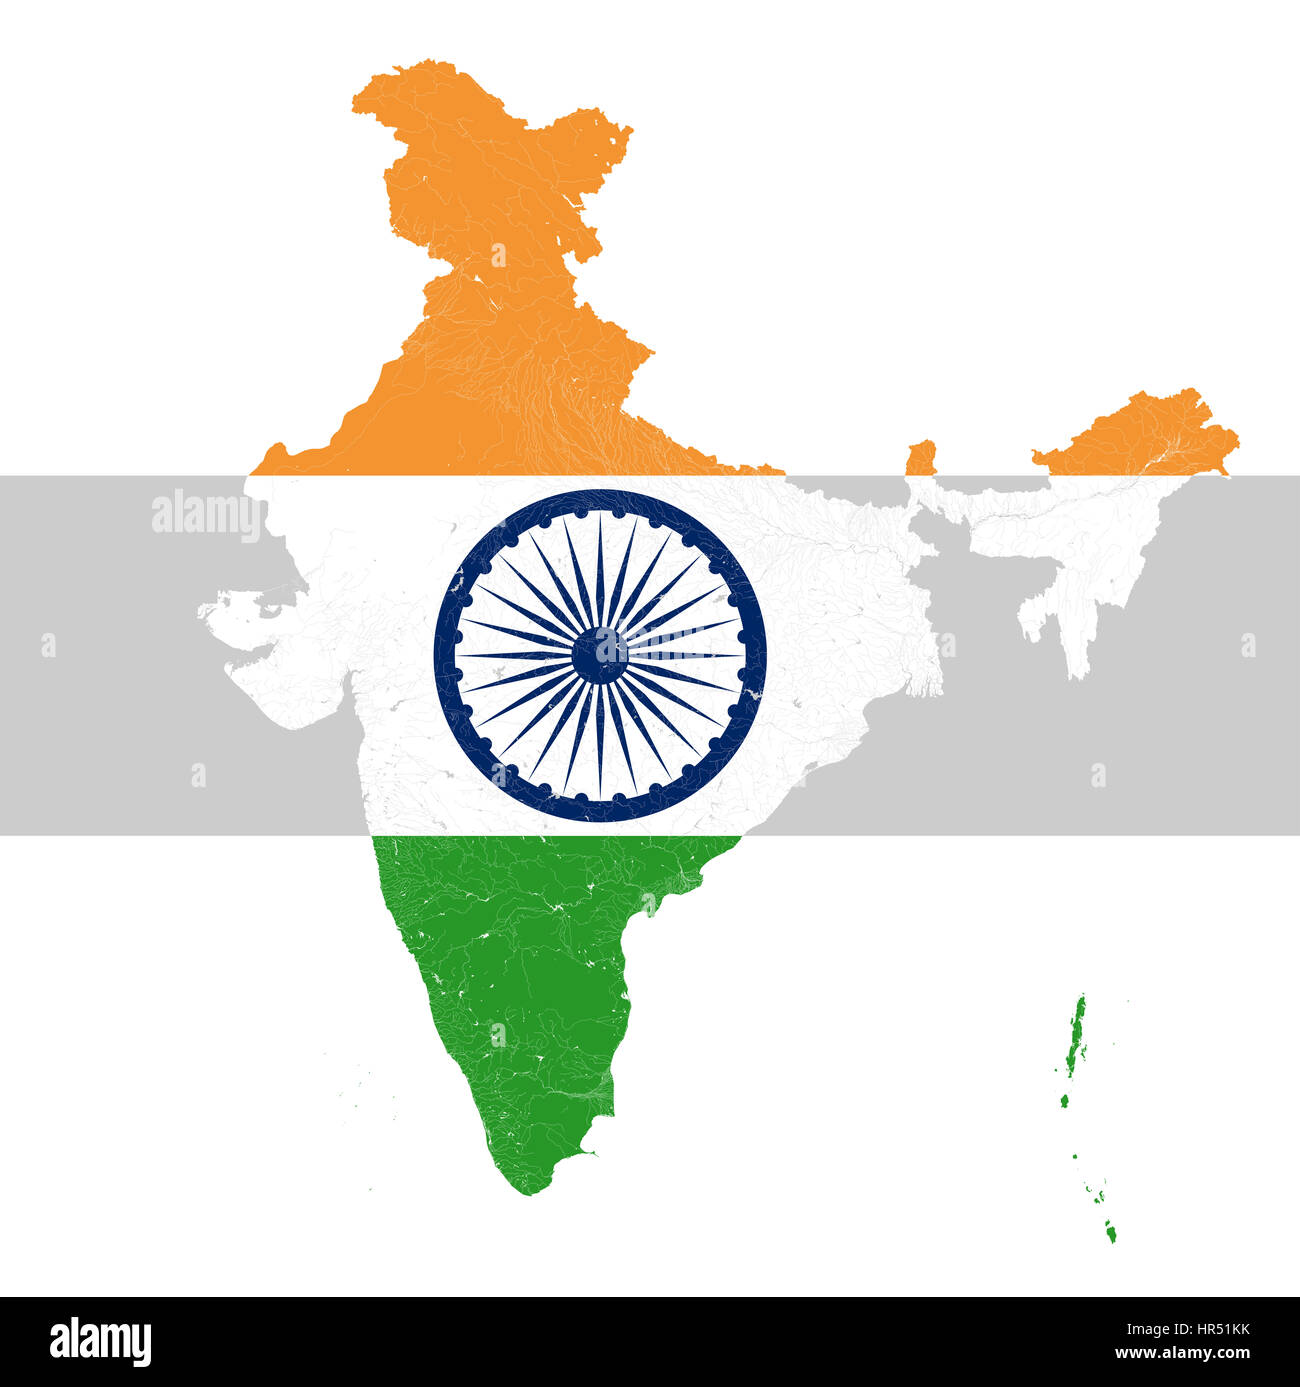 Karte von Indien mit Flüssen und Seen in den Farben der Nationalflagge Indiens... Karte besteht aus separaten Karten der Bundesstaaten und Unionsterritorien tha Stockfoto